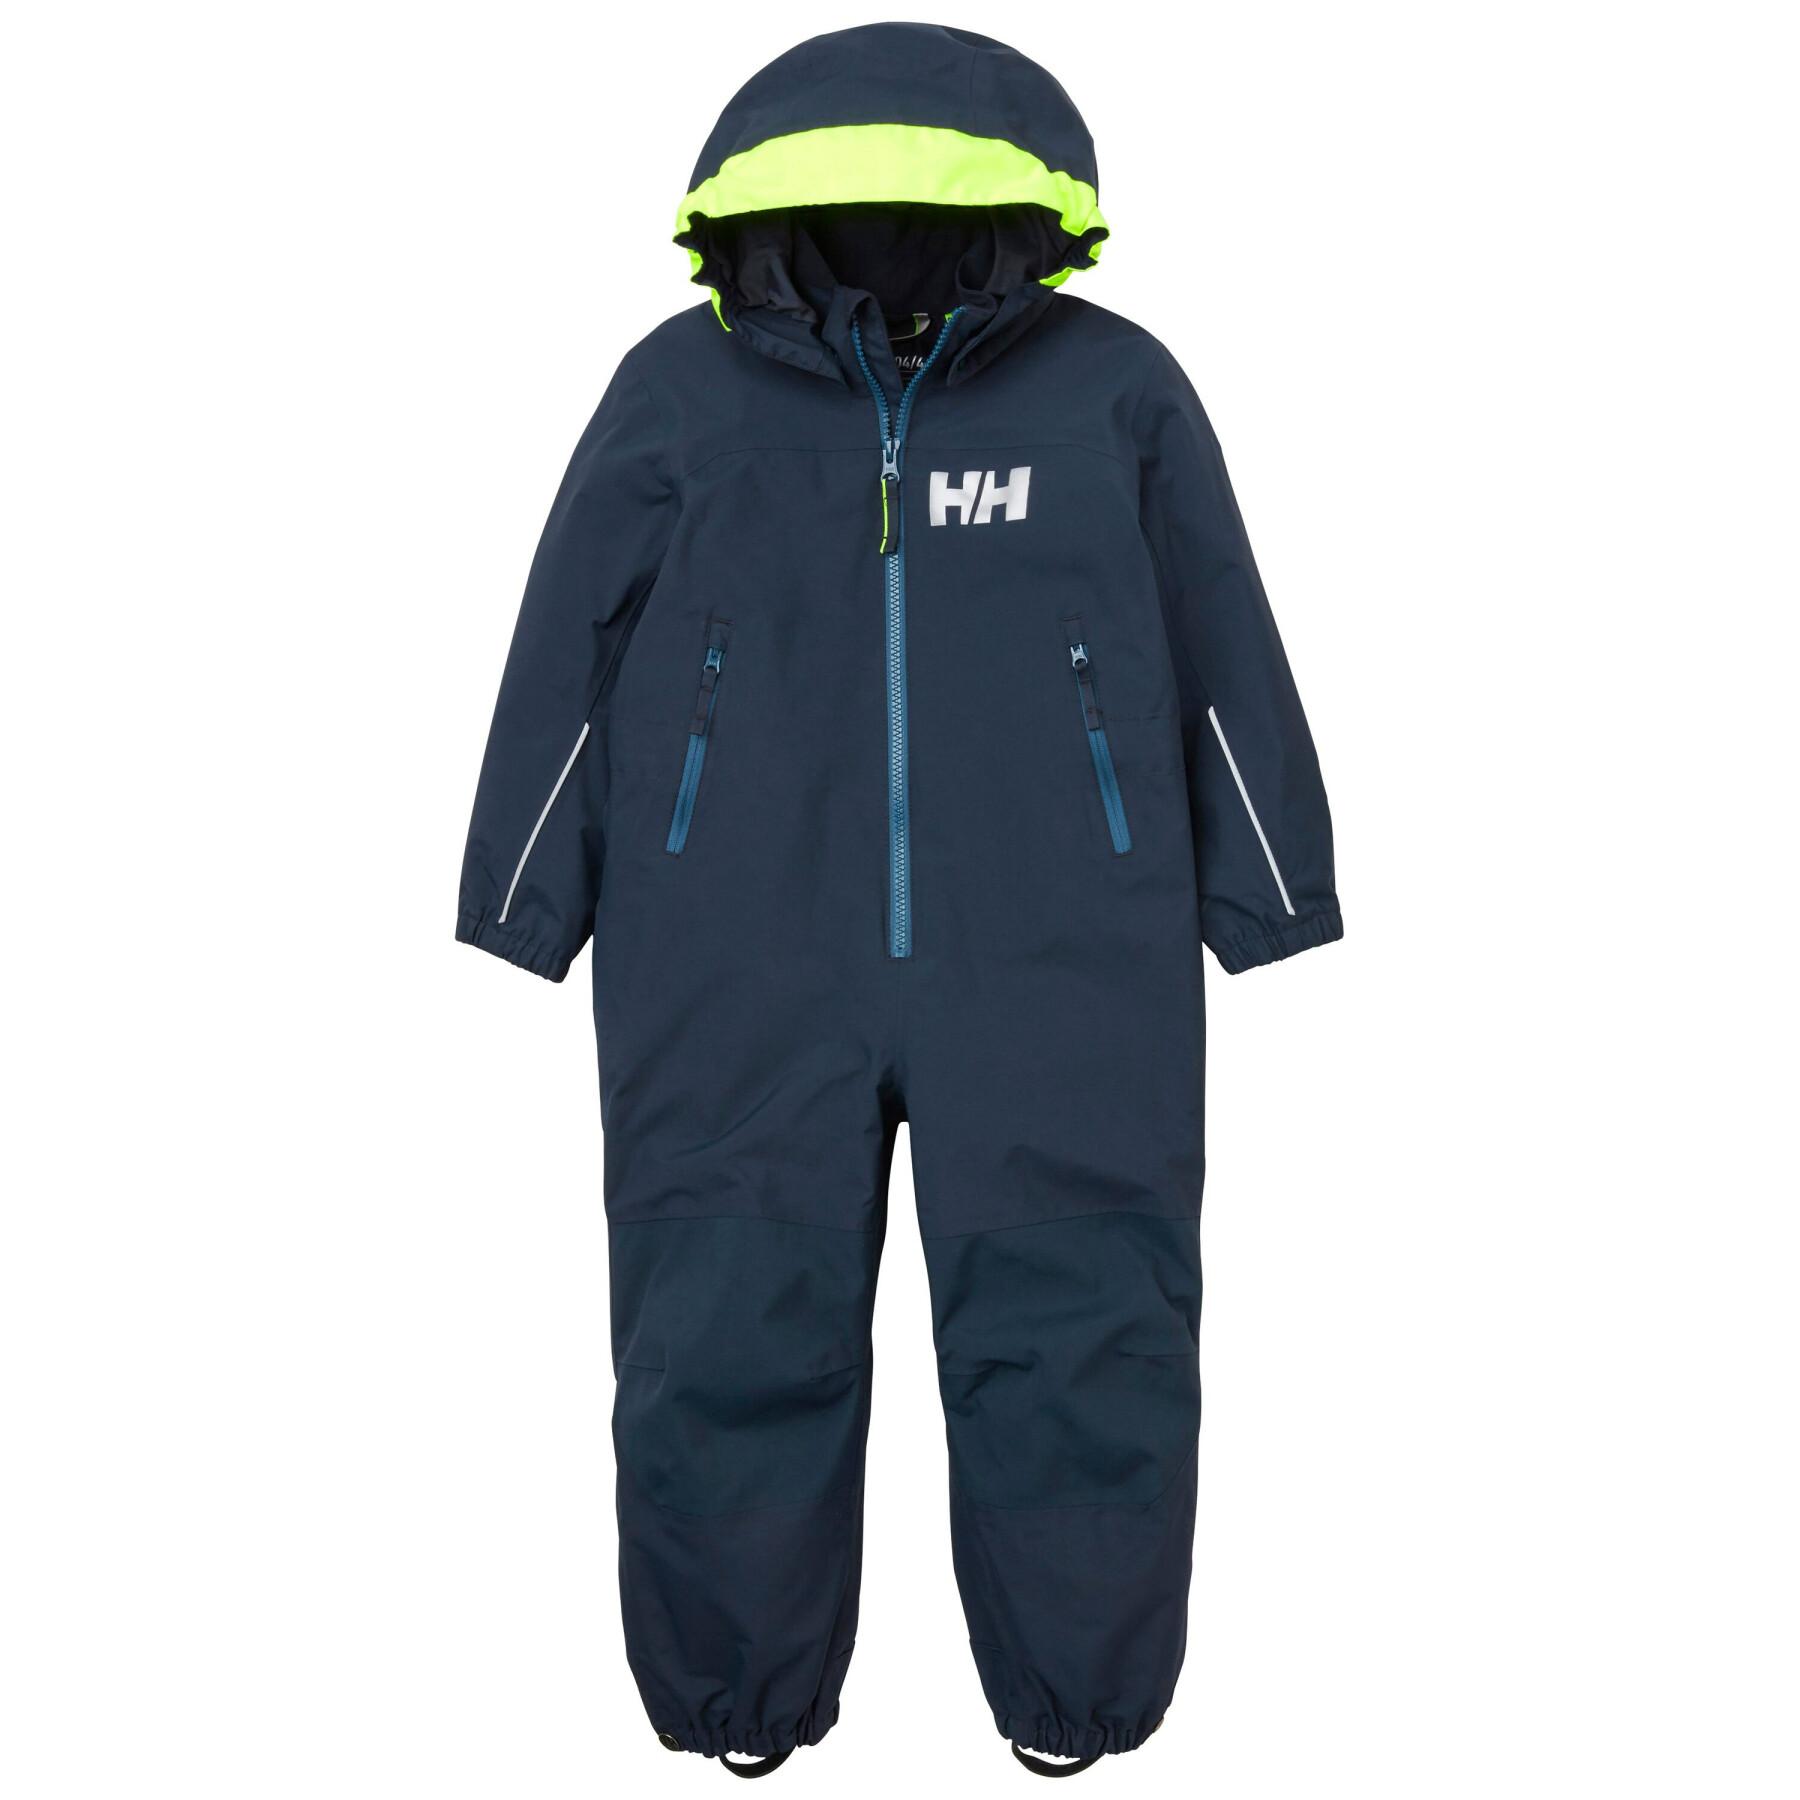 Ski suit for children Helly Hansen Guard